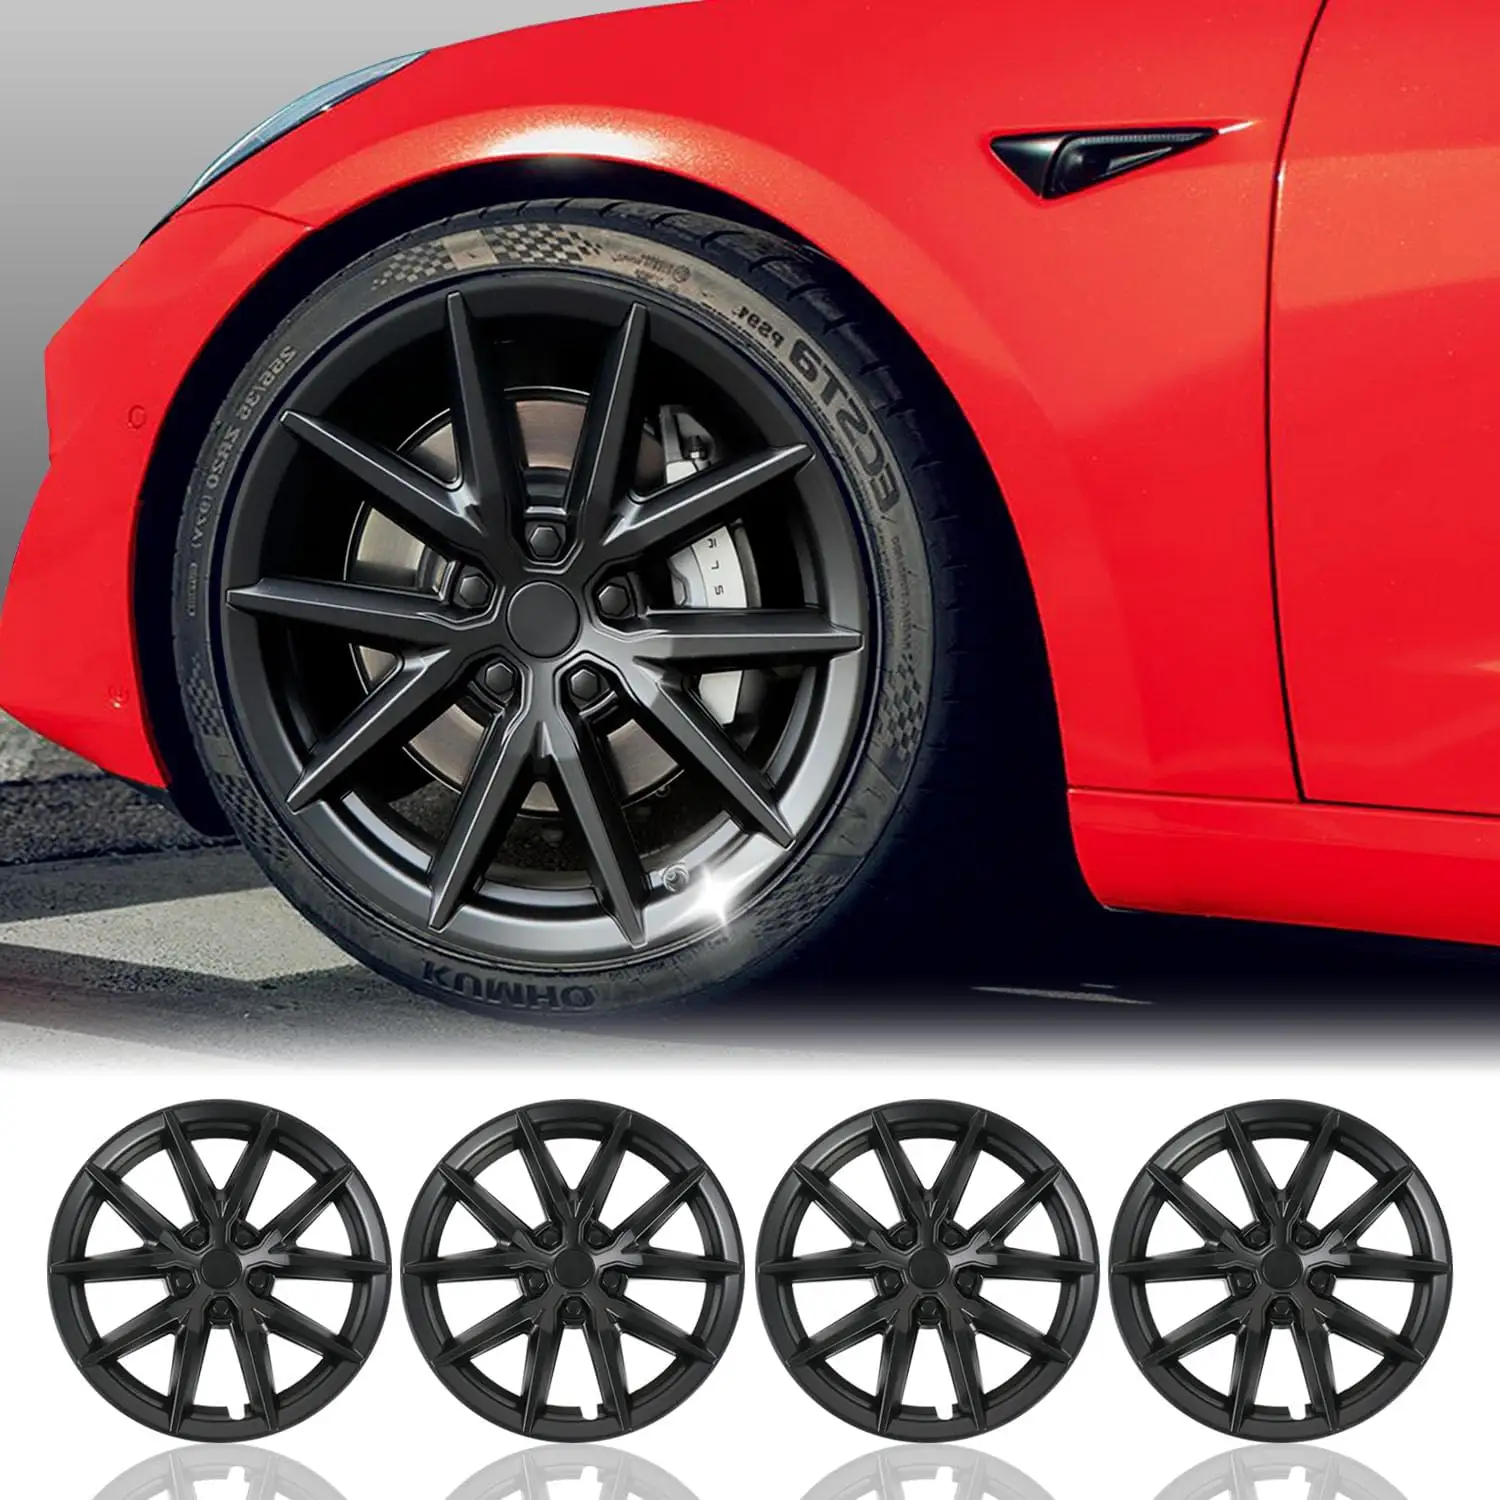 Nuevo estilo Tesla Modelo 3 18 "cubierta de rueda tapacubos Material ABS cubierta de cubo de rueda de coche con función de protección de cubierta de rueda completa